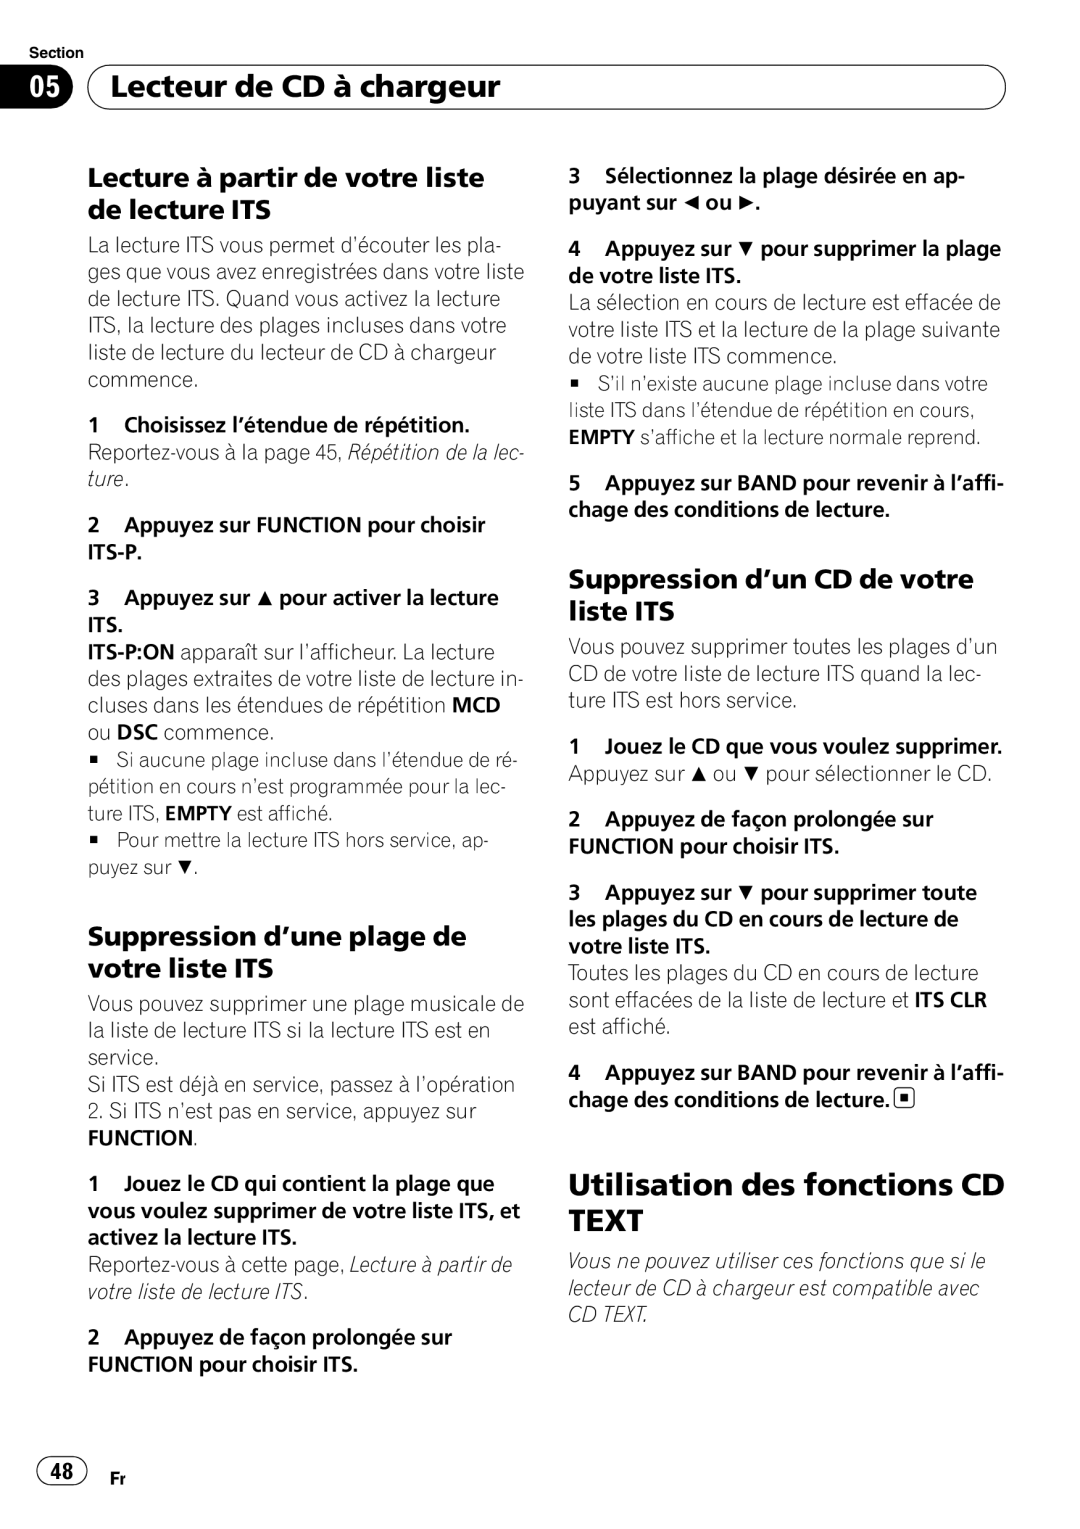 Sony DEH-P2900MP operation manual Utilisation des fonctions CD TEXT, Lecture à partir de votre liste de lecture ITS 